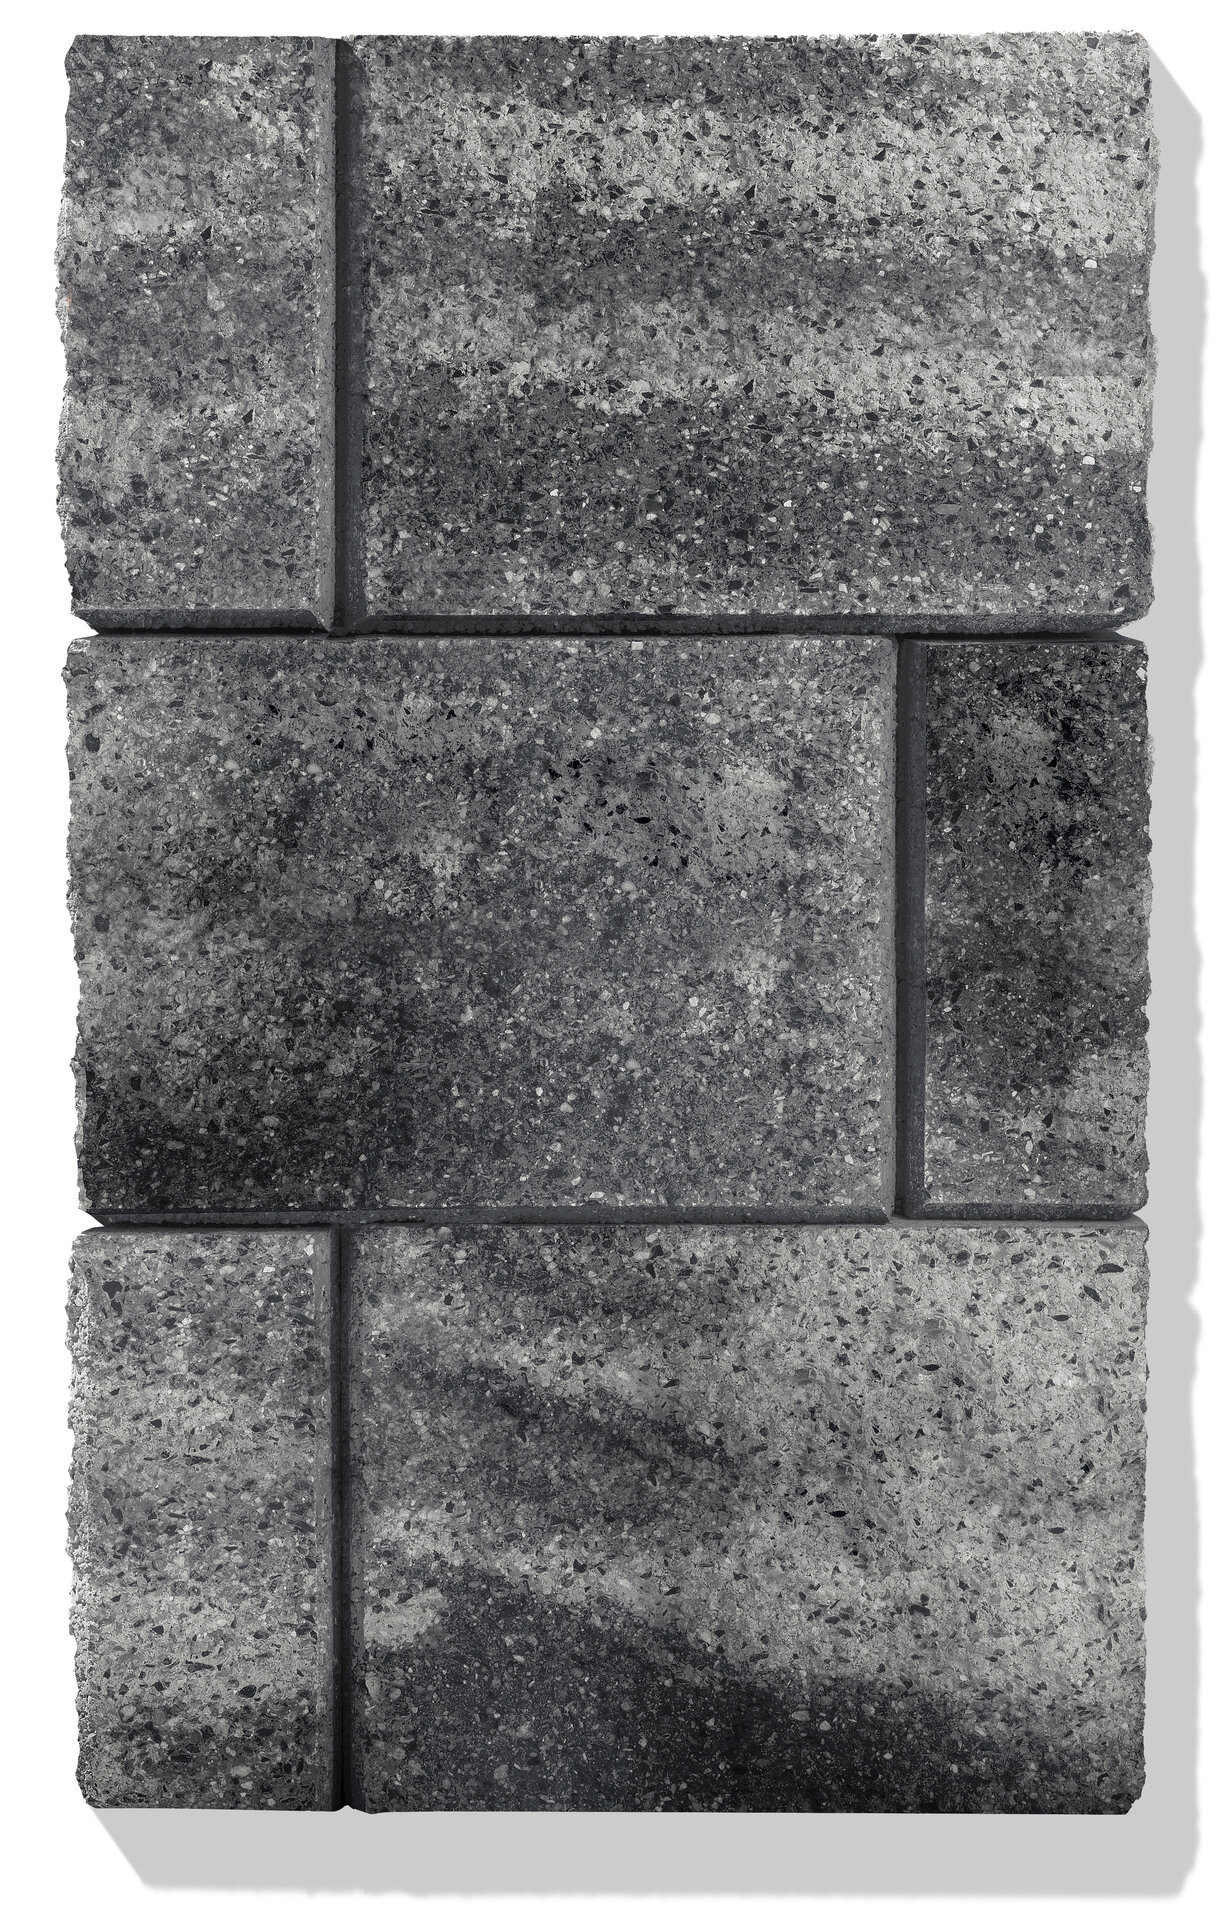 grau anthrazit betonstein maclit xl